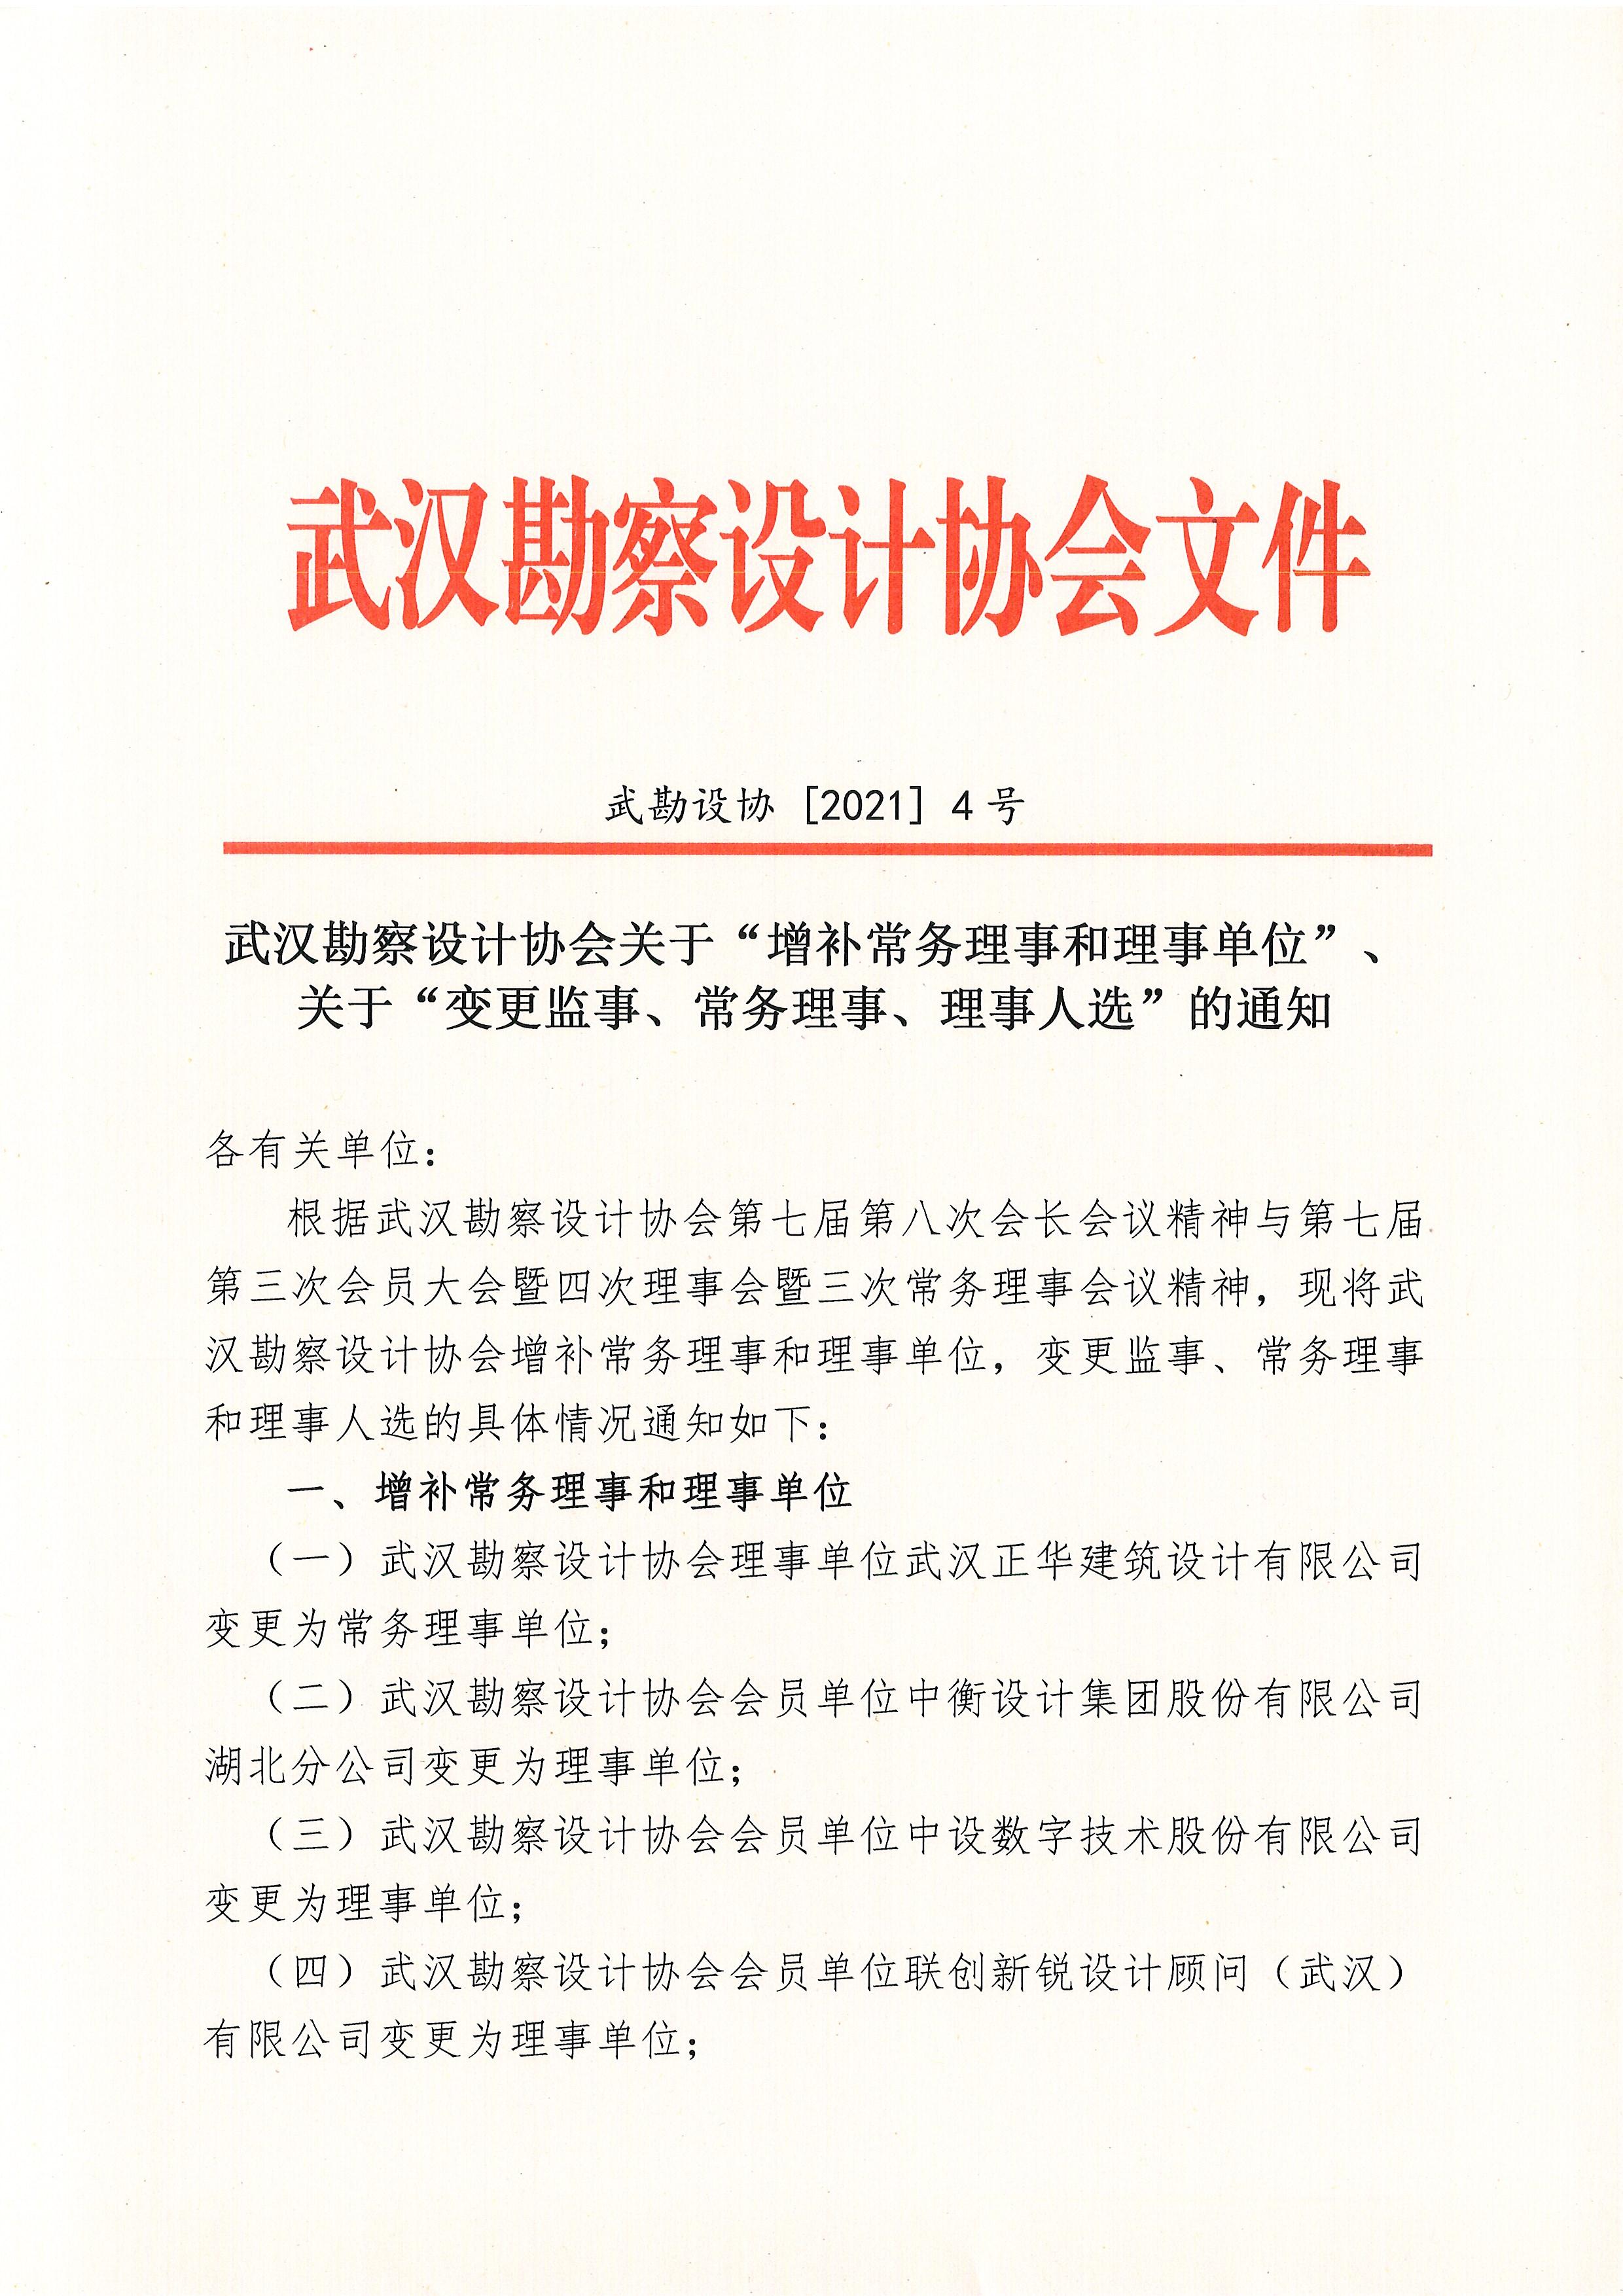 武汉勘察设计协会关于“增补常务理事和理事单位”、“关于”变更监事、常务理事、理事人选“的通知